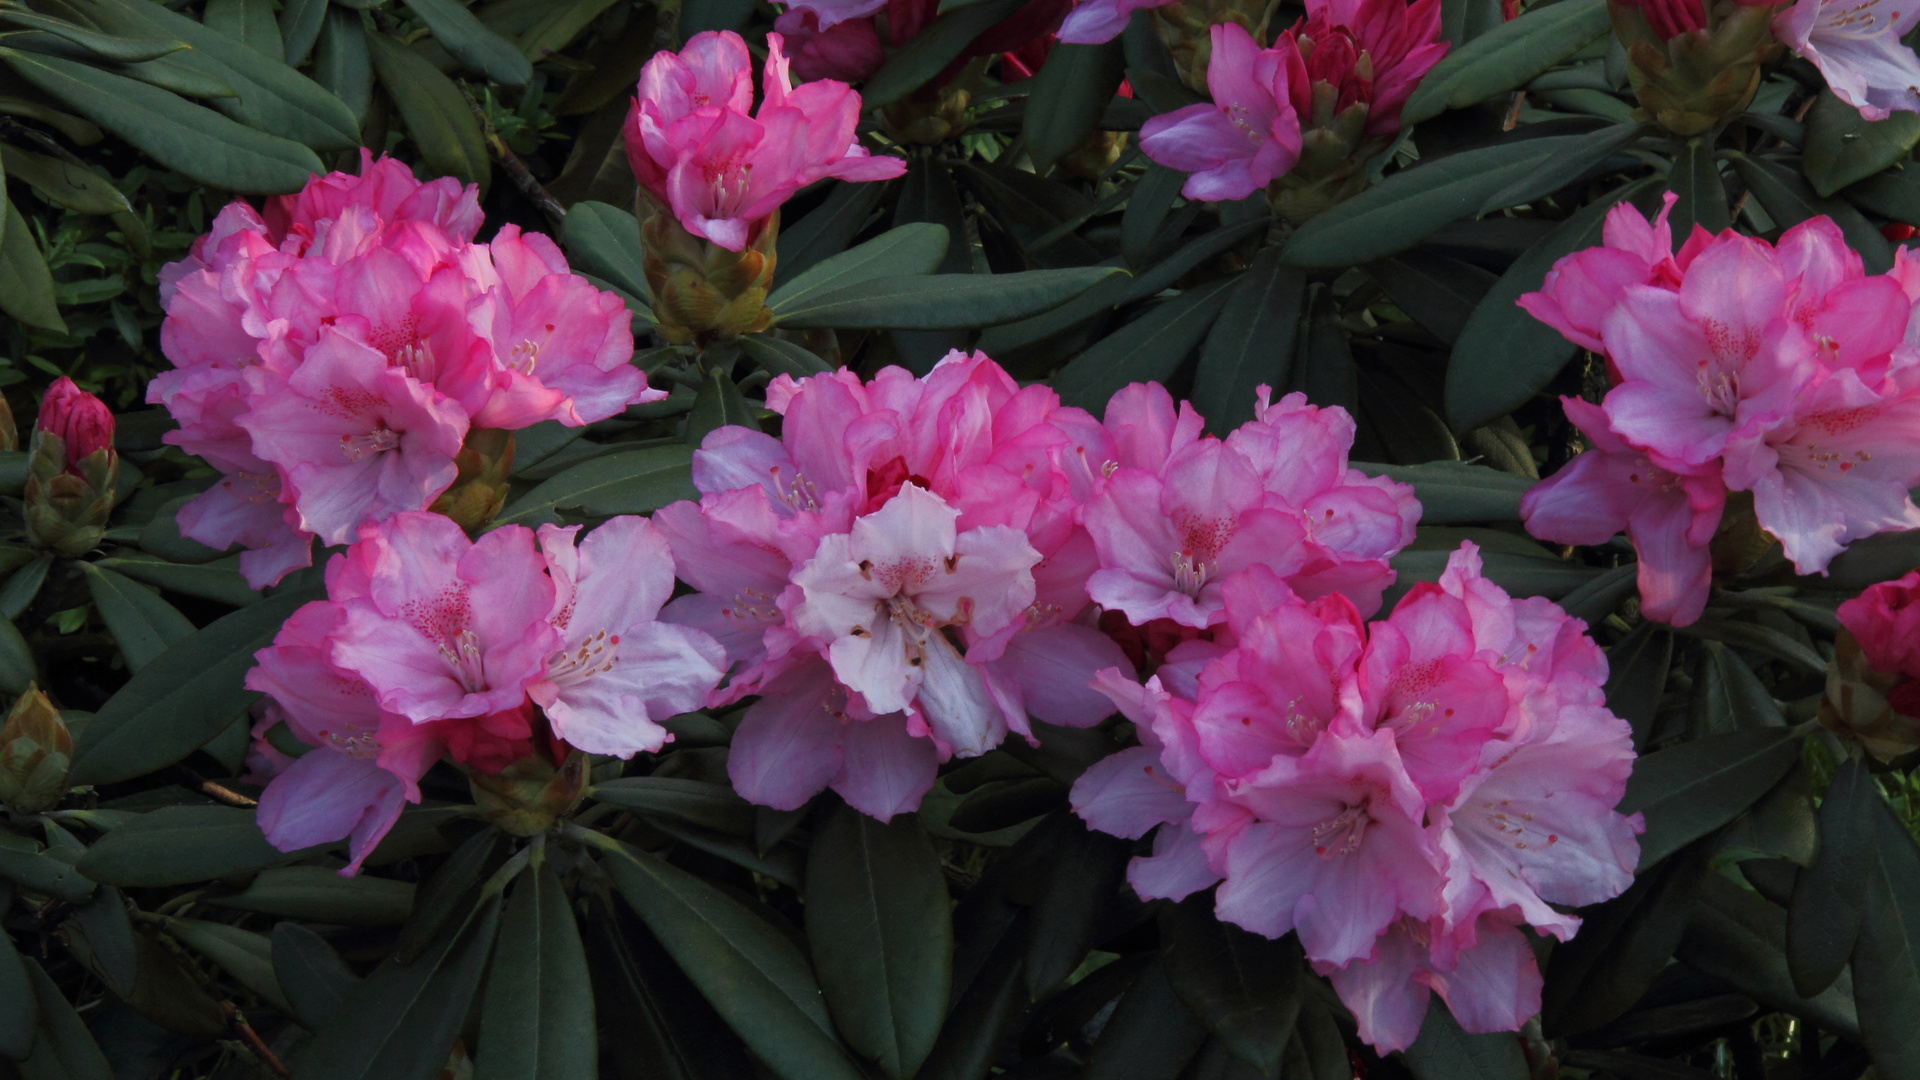 Rhododendronblüten vom feinsten für meinen Geschmack...